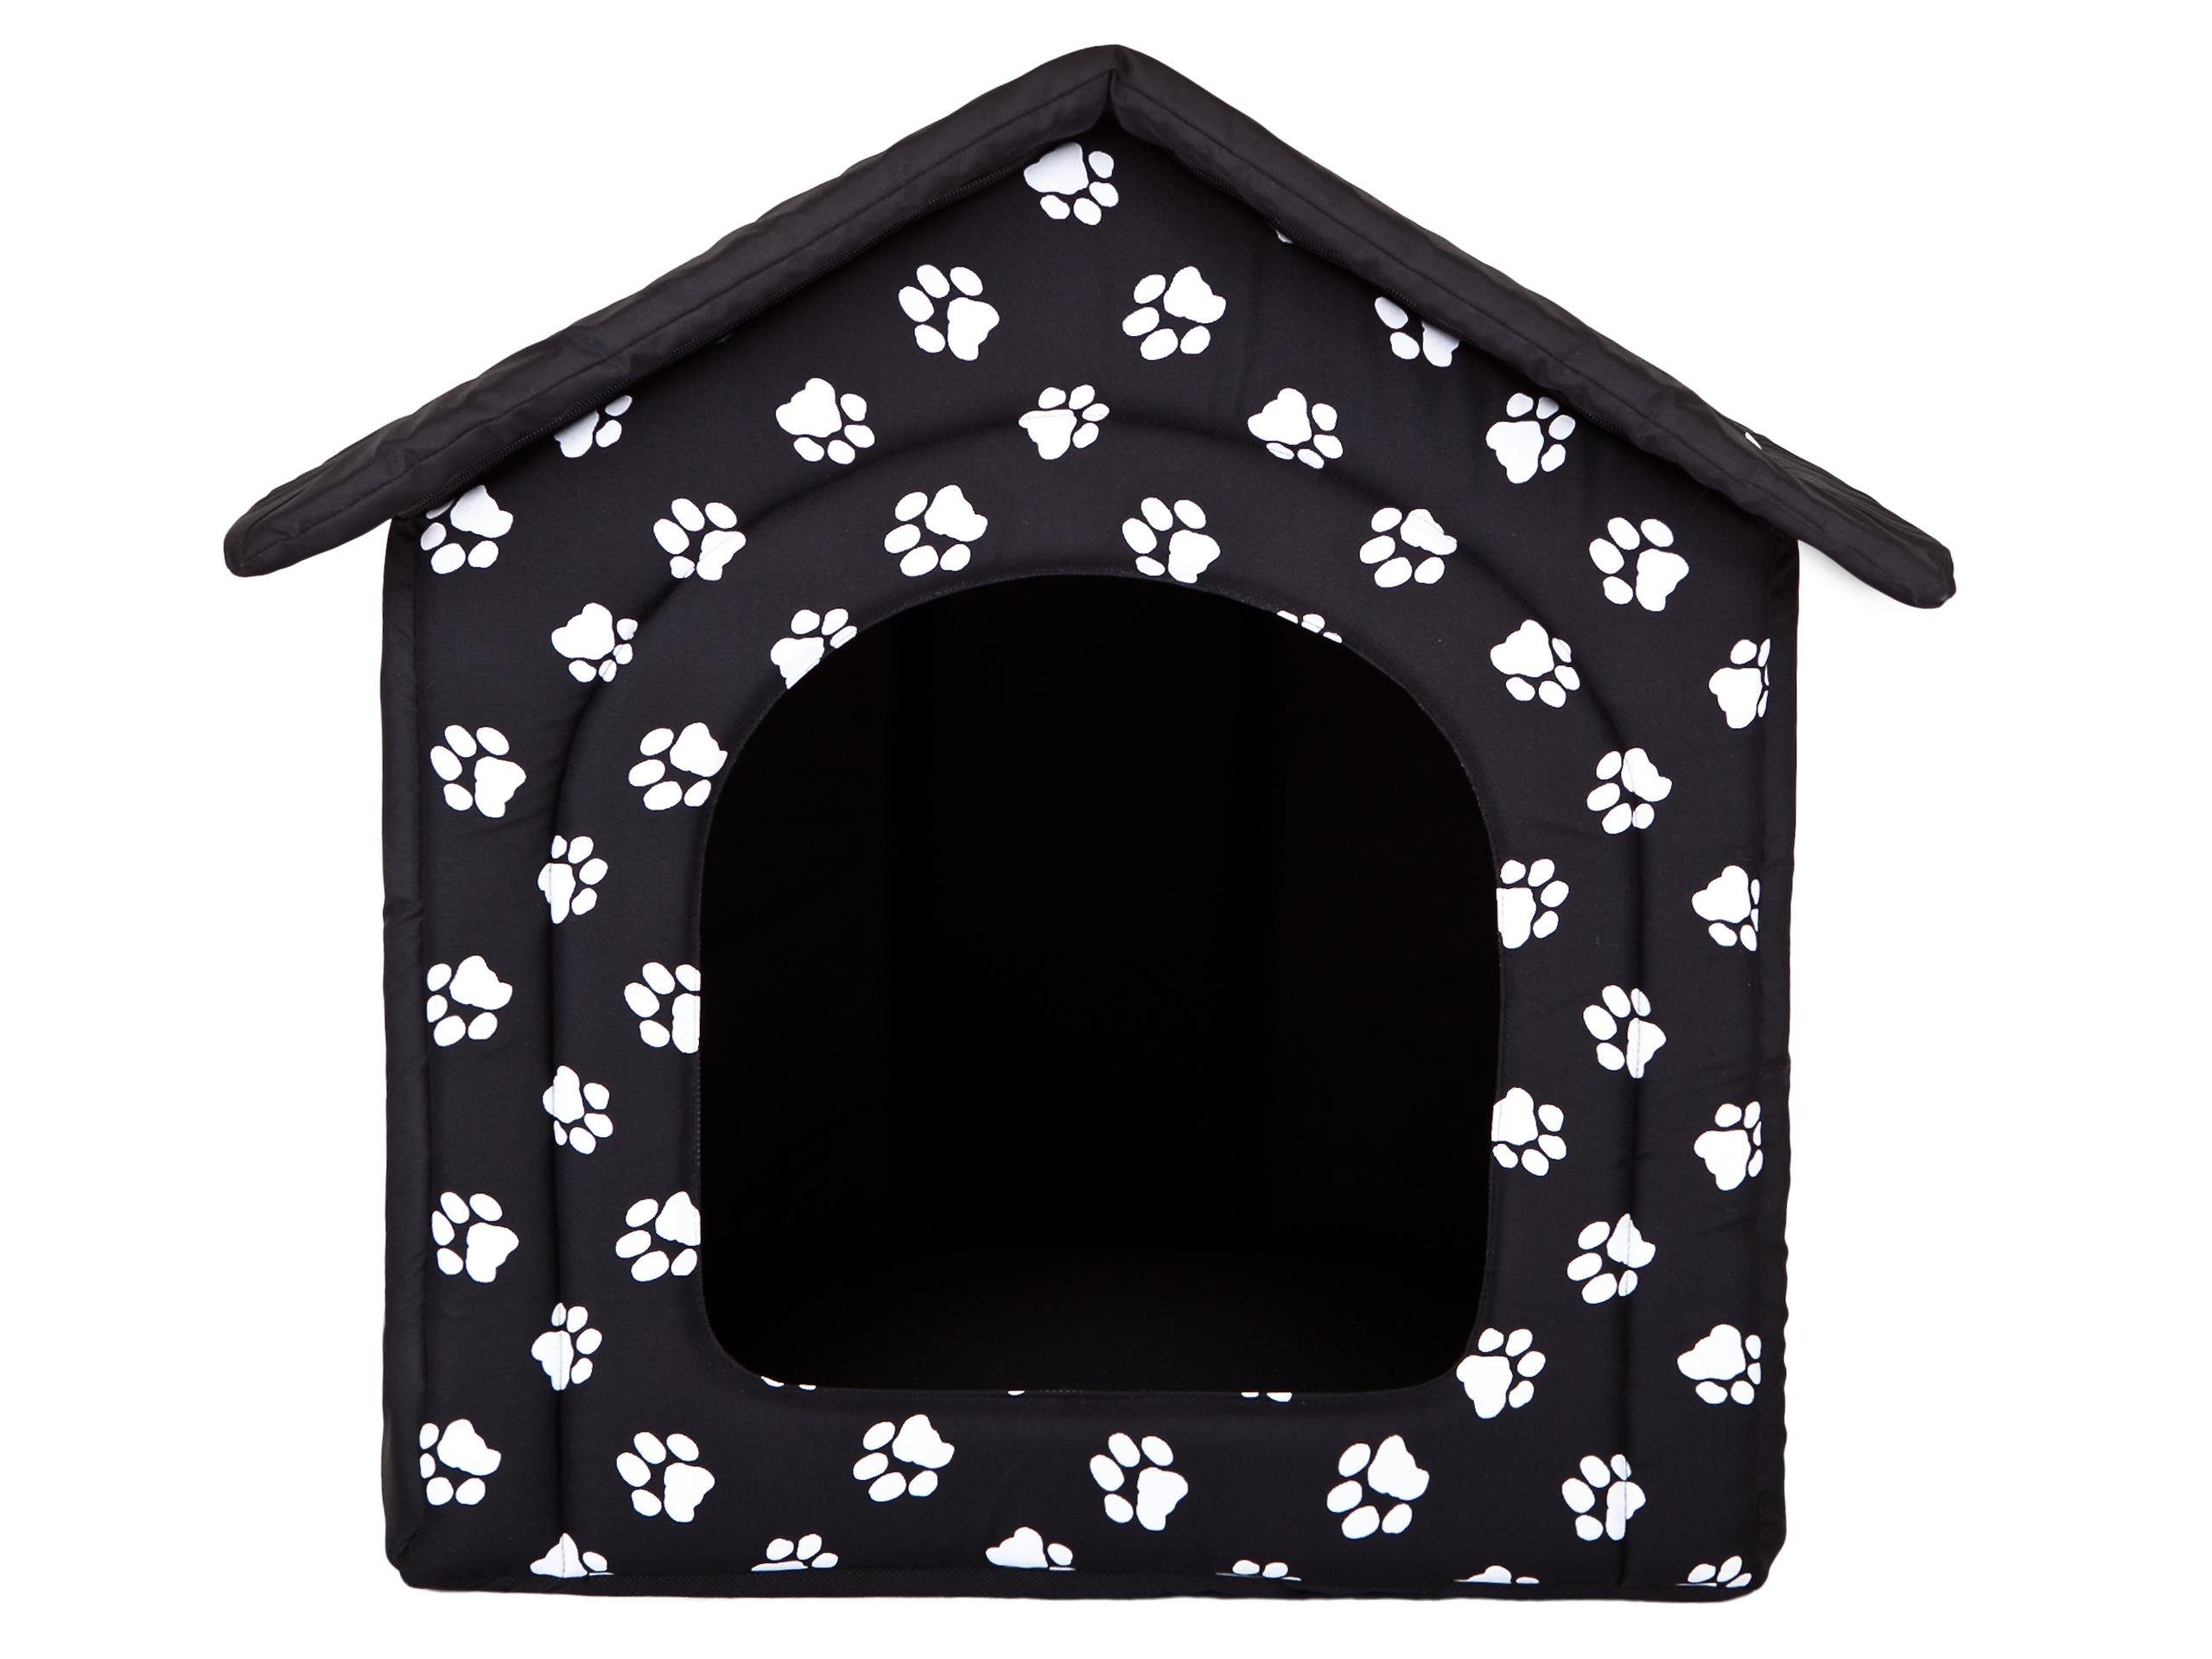 Bjird Tierhaus Hundehütte - Hundehöhle für kleine mittelgroße und große Hunde, Hundeliegen mit herausnehmbarer Dach, Größe S-XXXL, made in EU